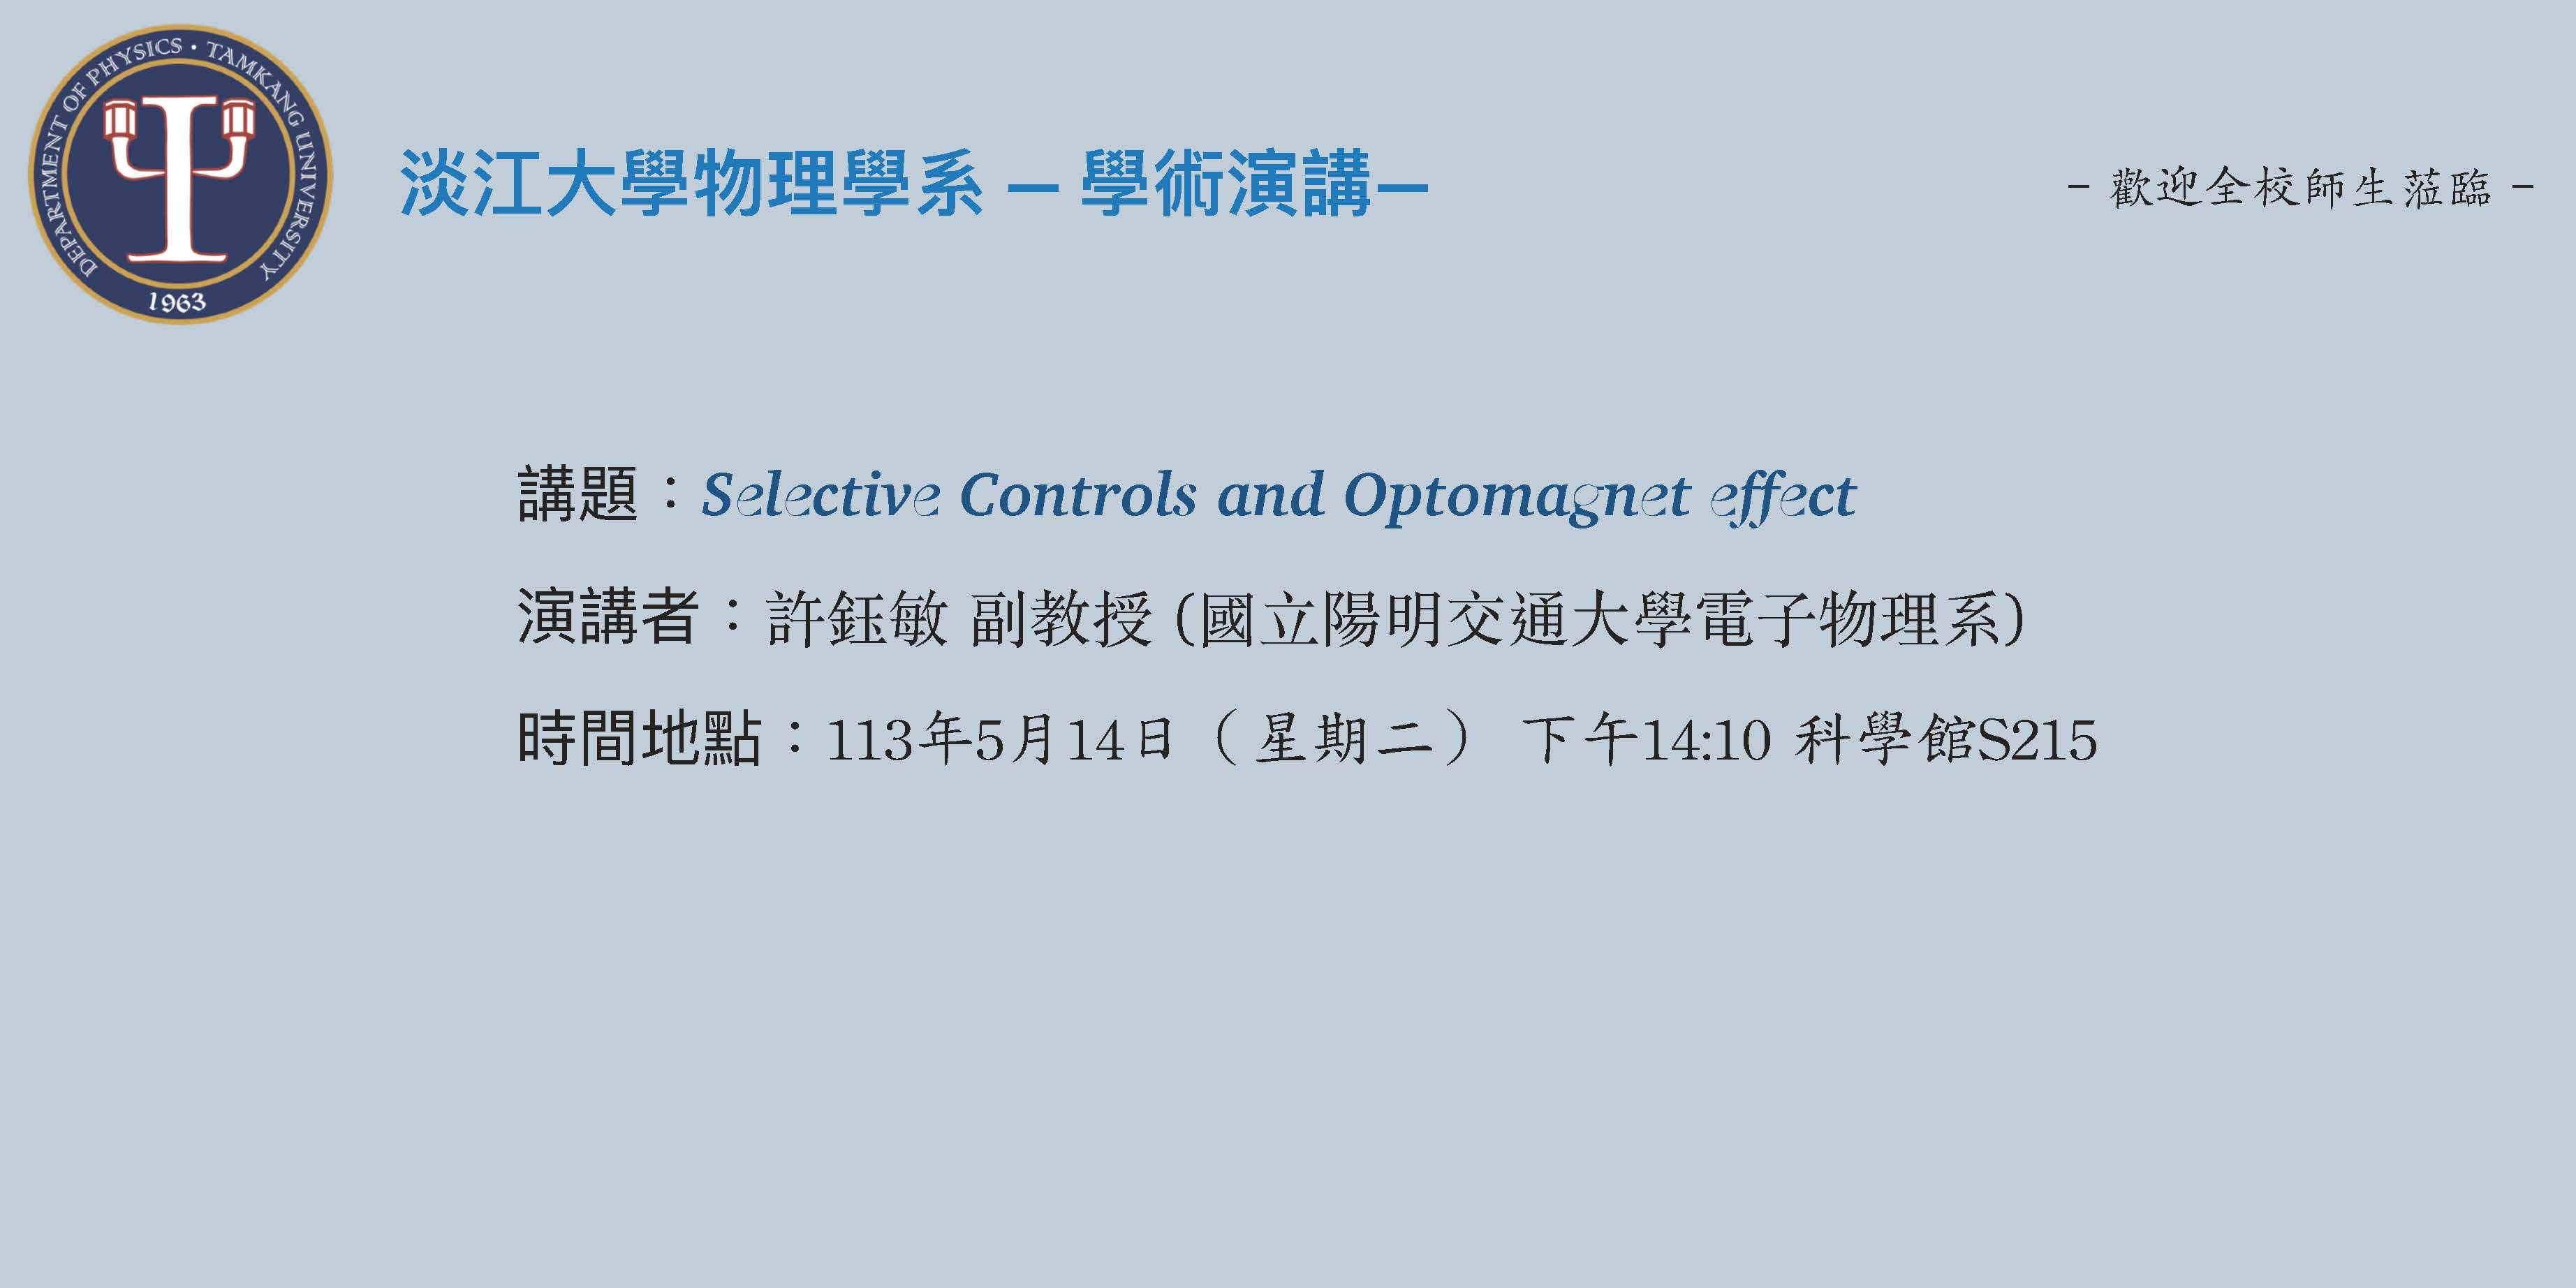 【演講】113.5.14 講題：Selective Controls and Optomagnet effect